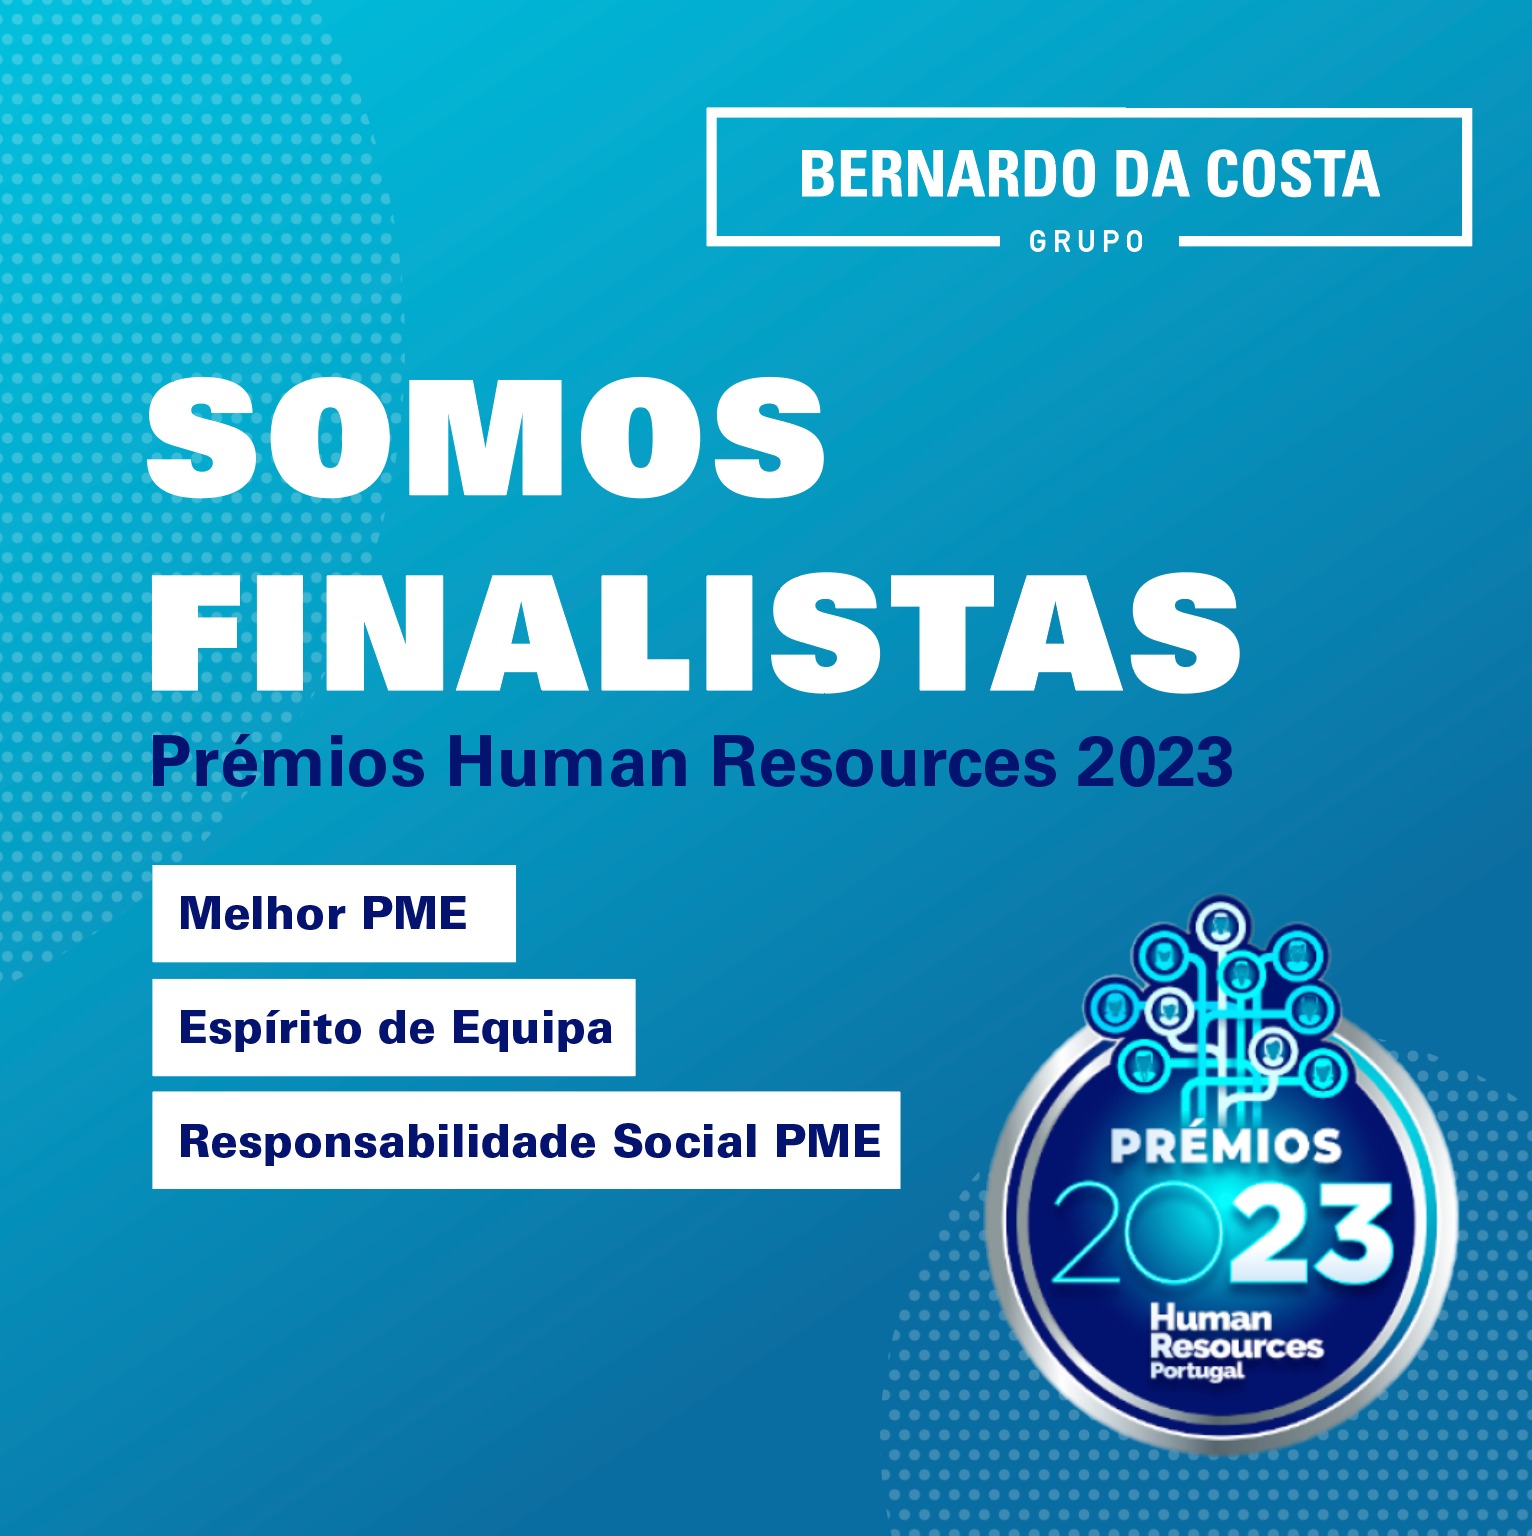 Somos finalistas em 3 categorias dos Prémios Human Resources 2023